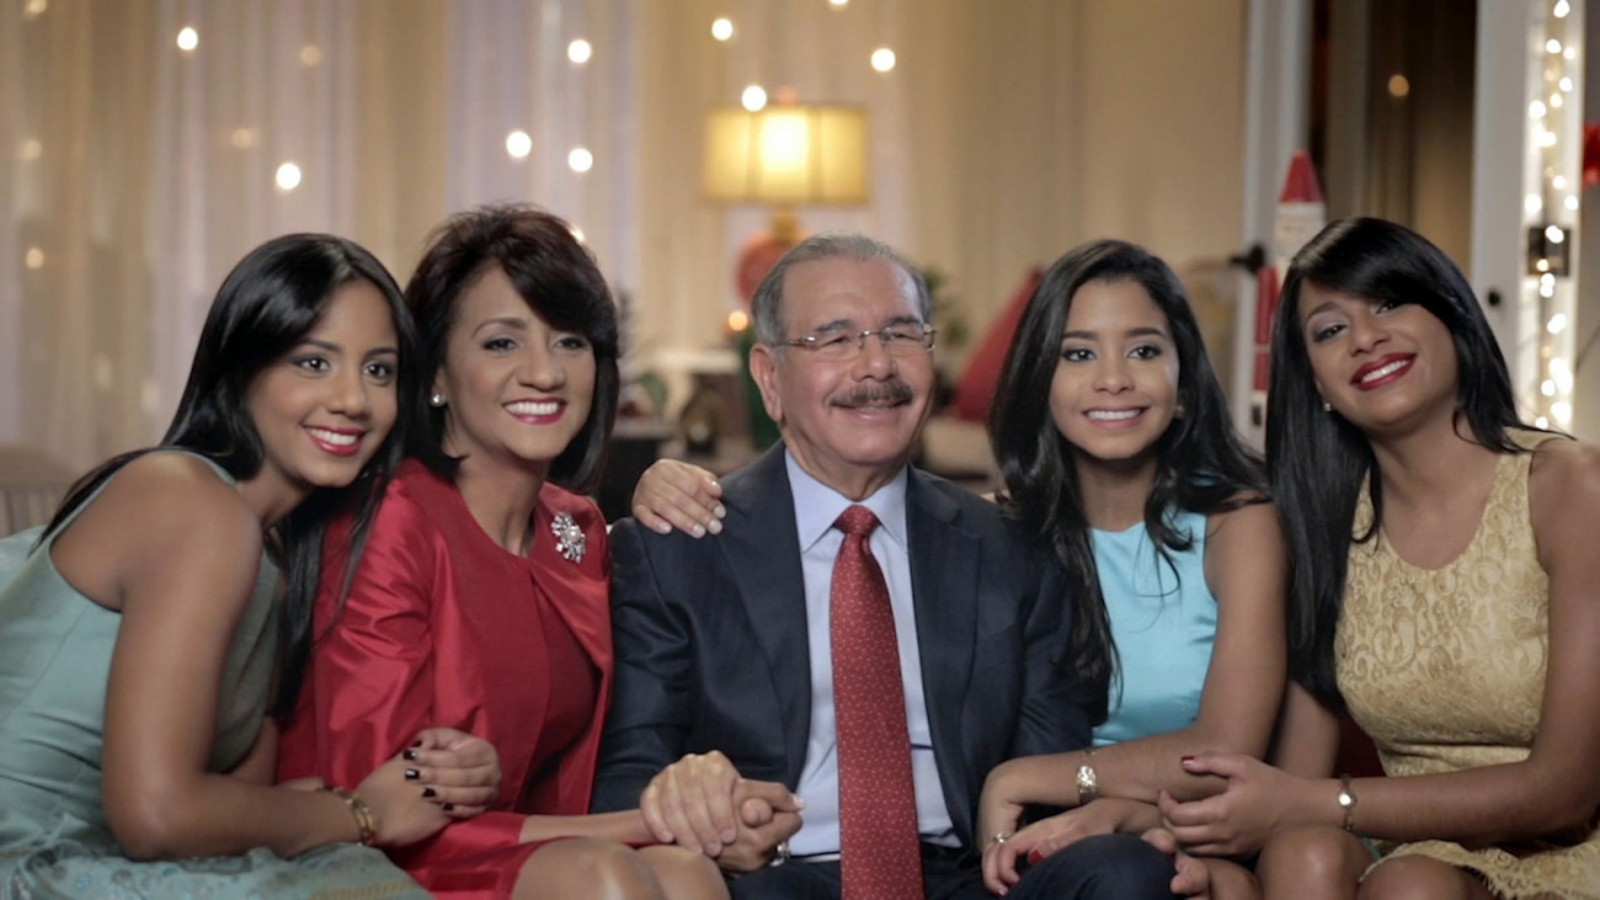 REPÚBLICA DOMINICANA: En Navidad, presidente Danilo Medina envía cálida felicitación al pueblo dominicano y recuerda importancia de ser solidarios